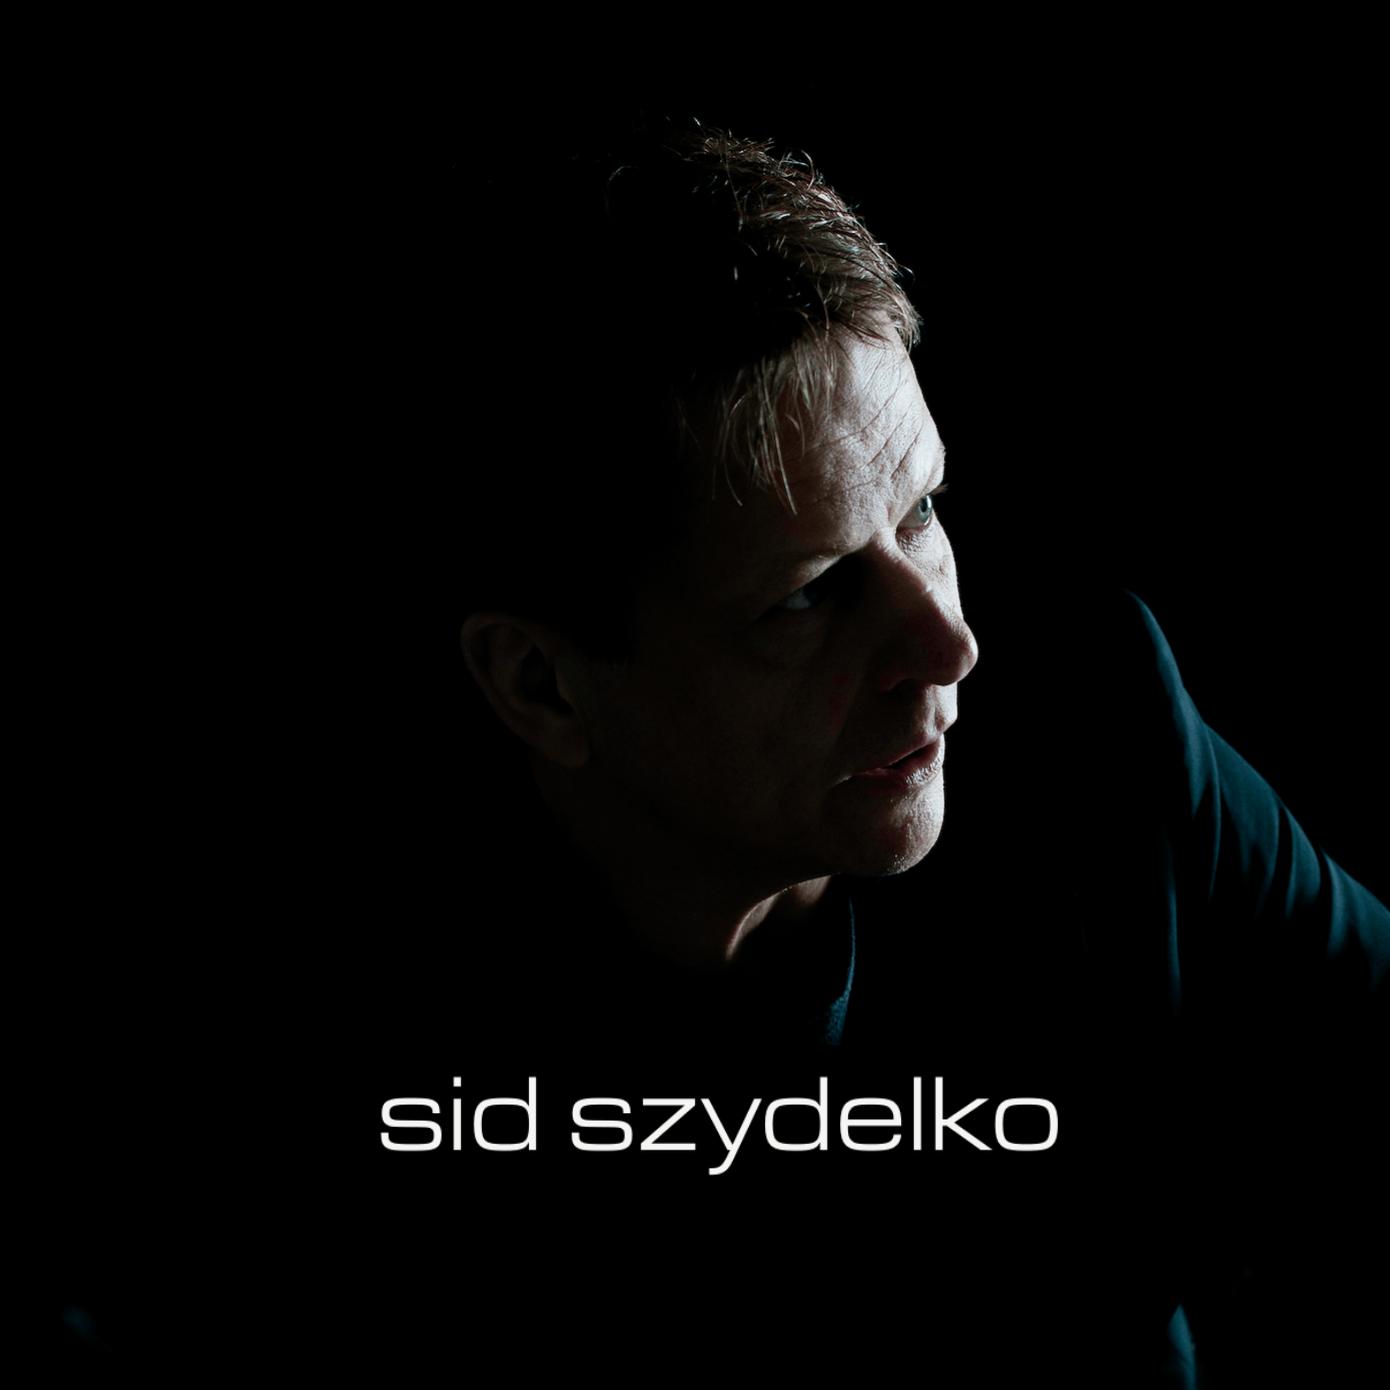 Sid Szydelko